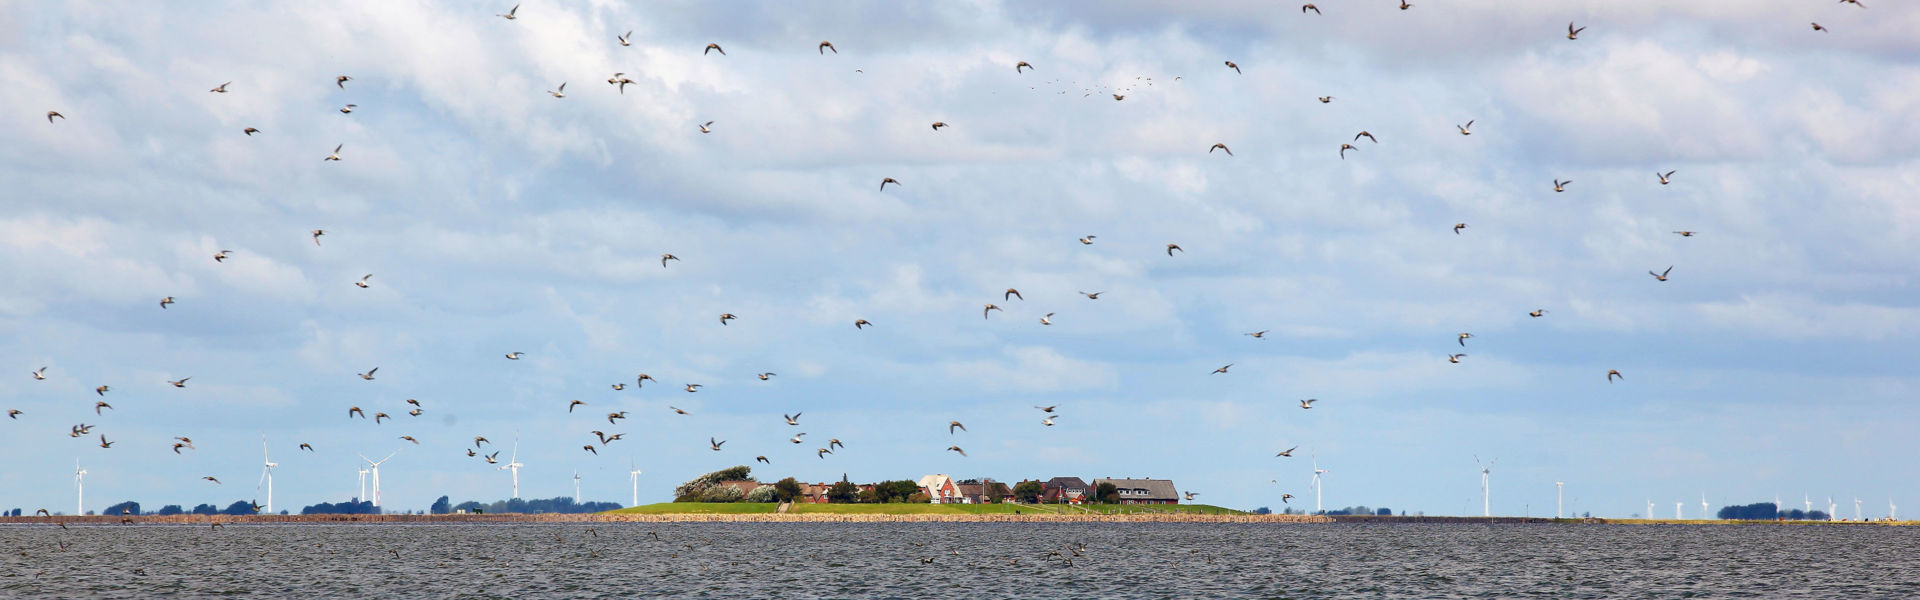 Oland, im Hintergrund die Küstenlinie des Festlandes, zahlreiche fliegende Möwen